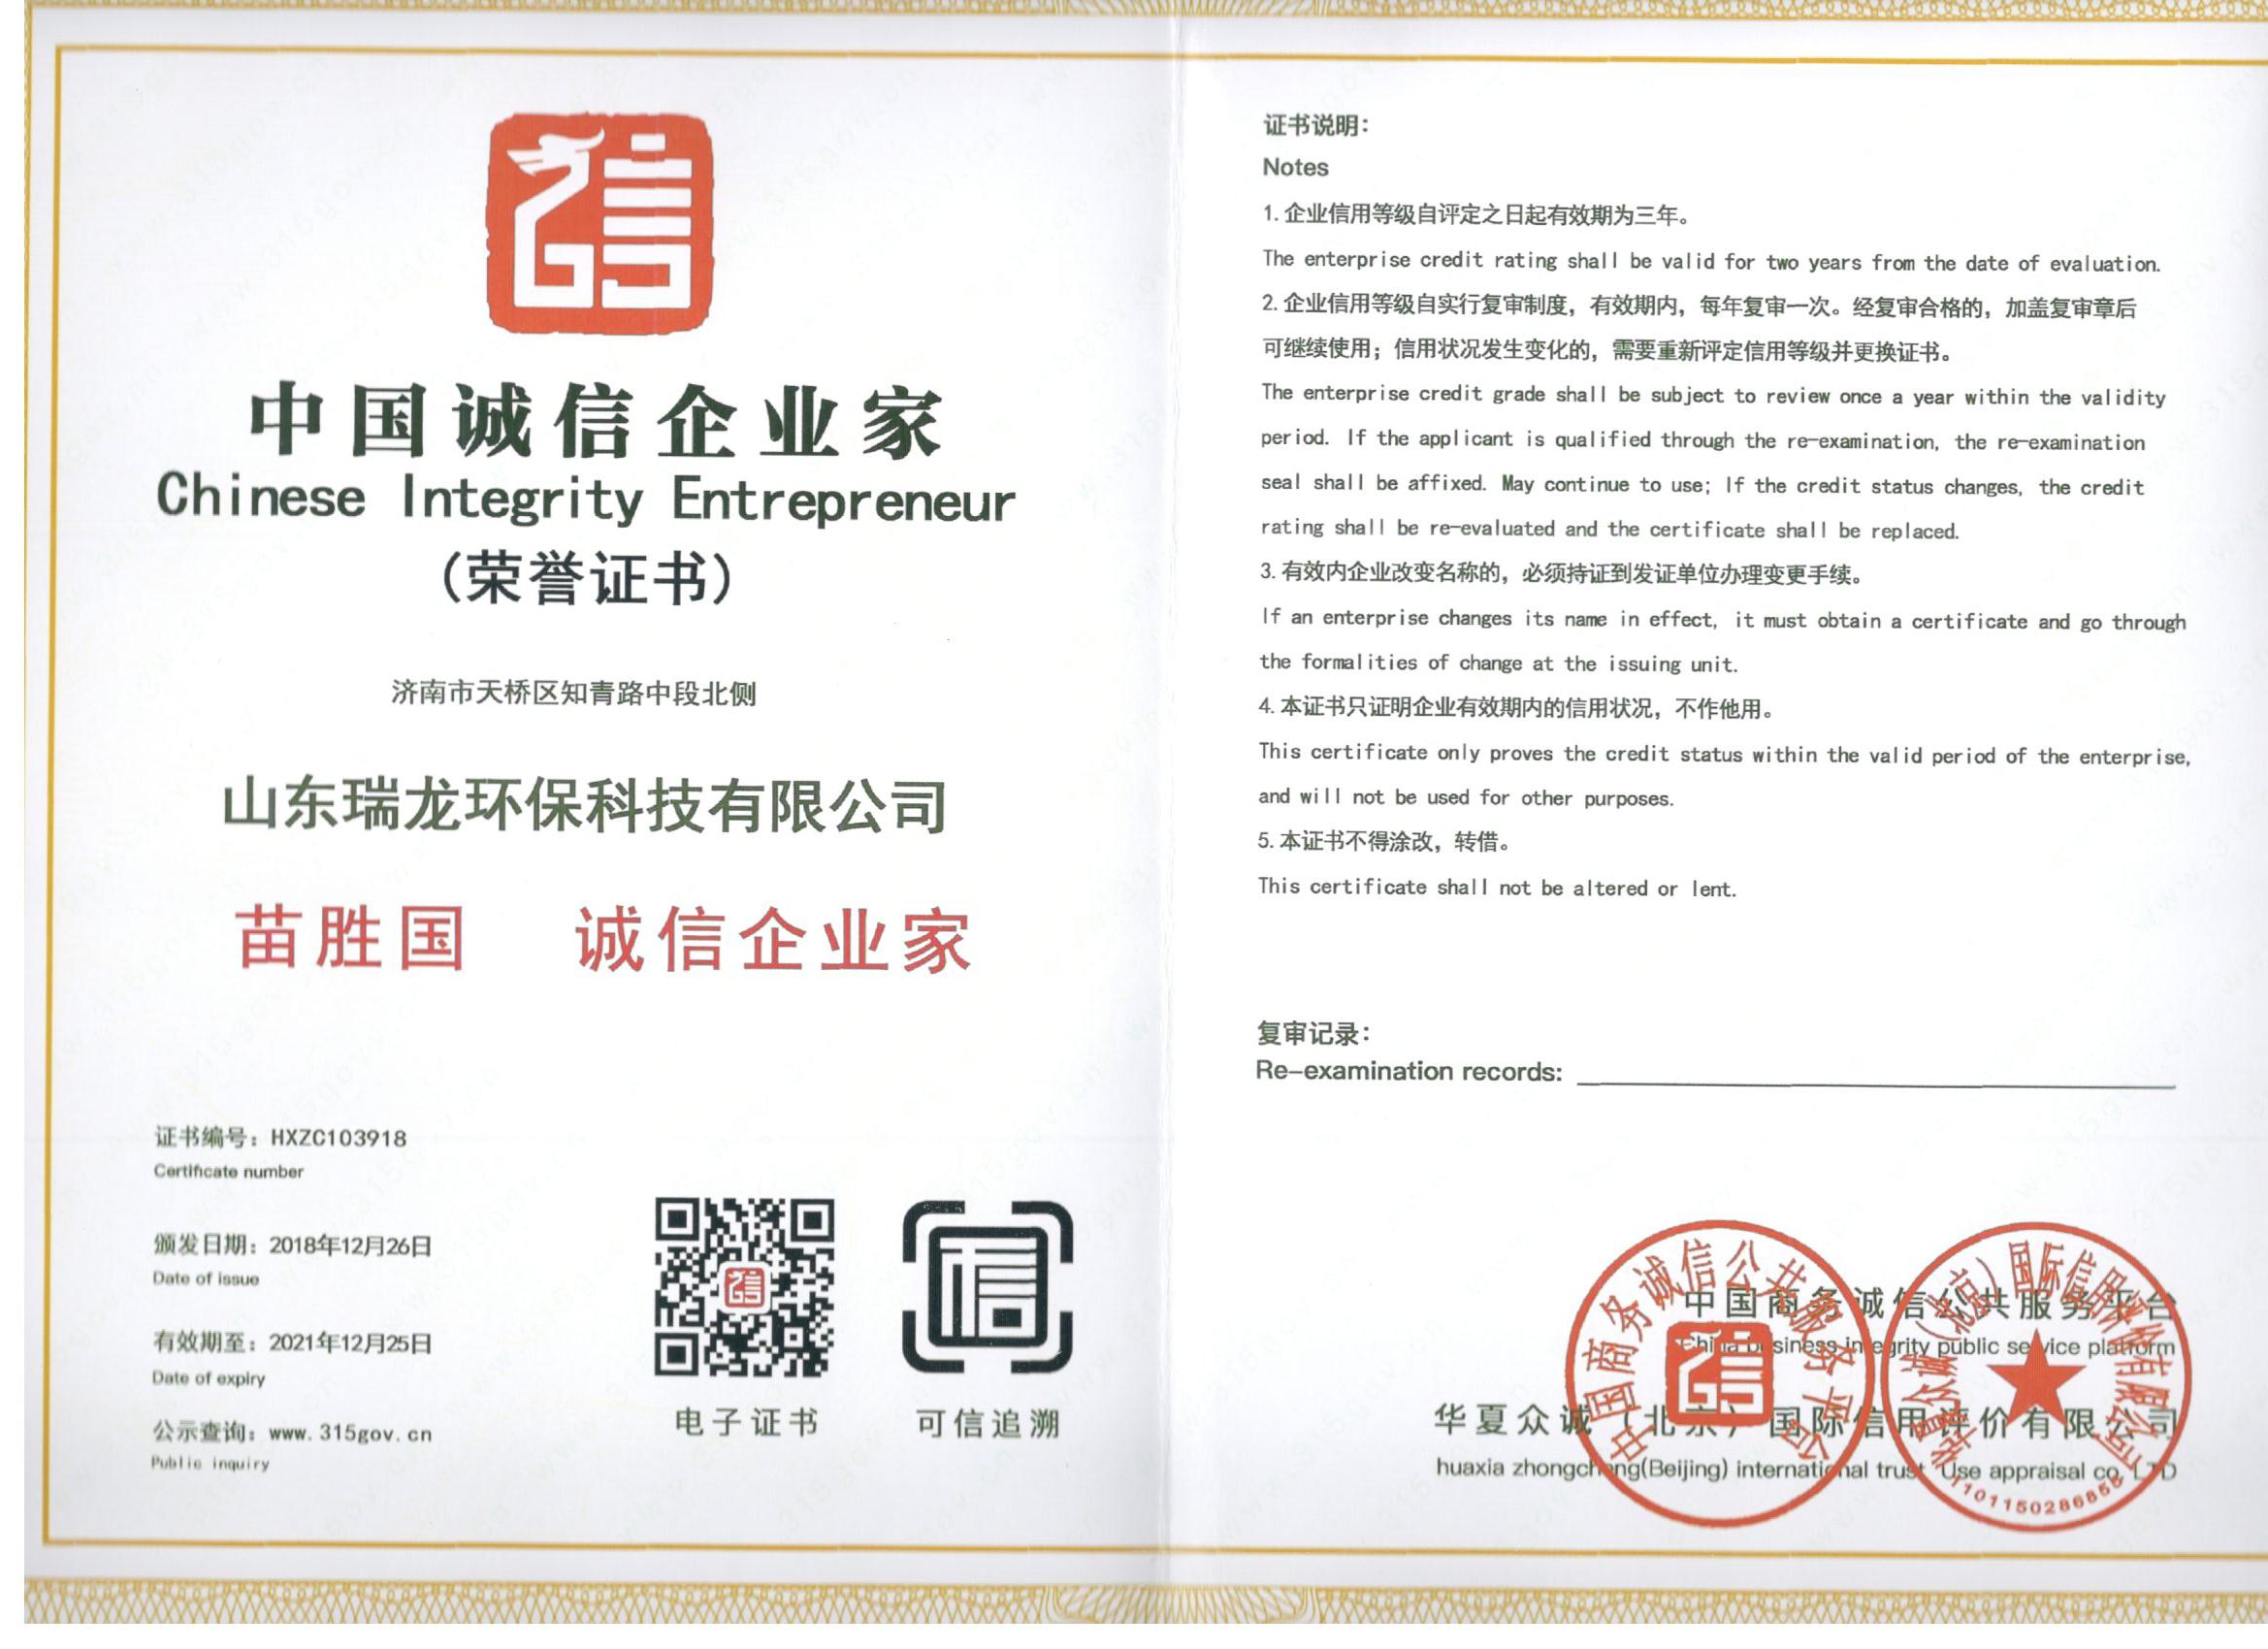 中国诚信企业家经理人证书 Certificate of honest entrepreneur manager in China